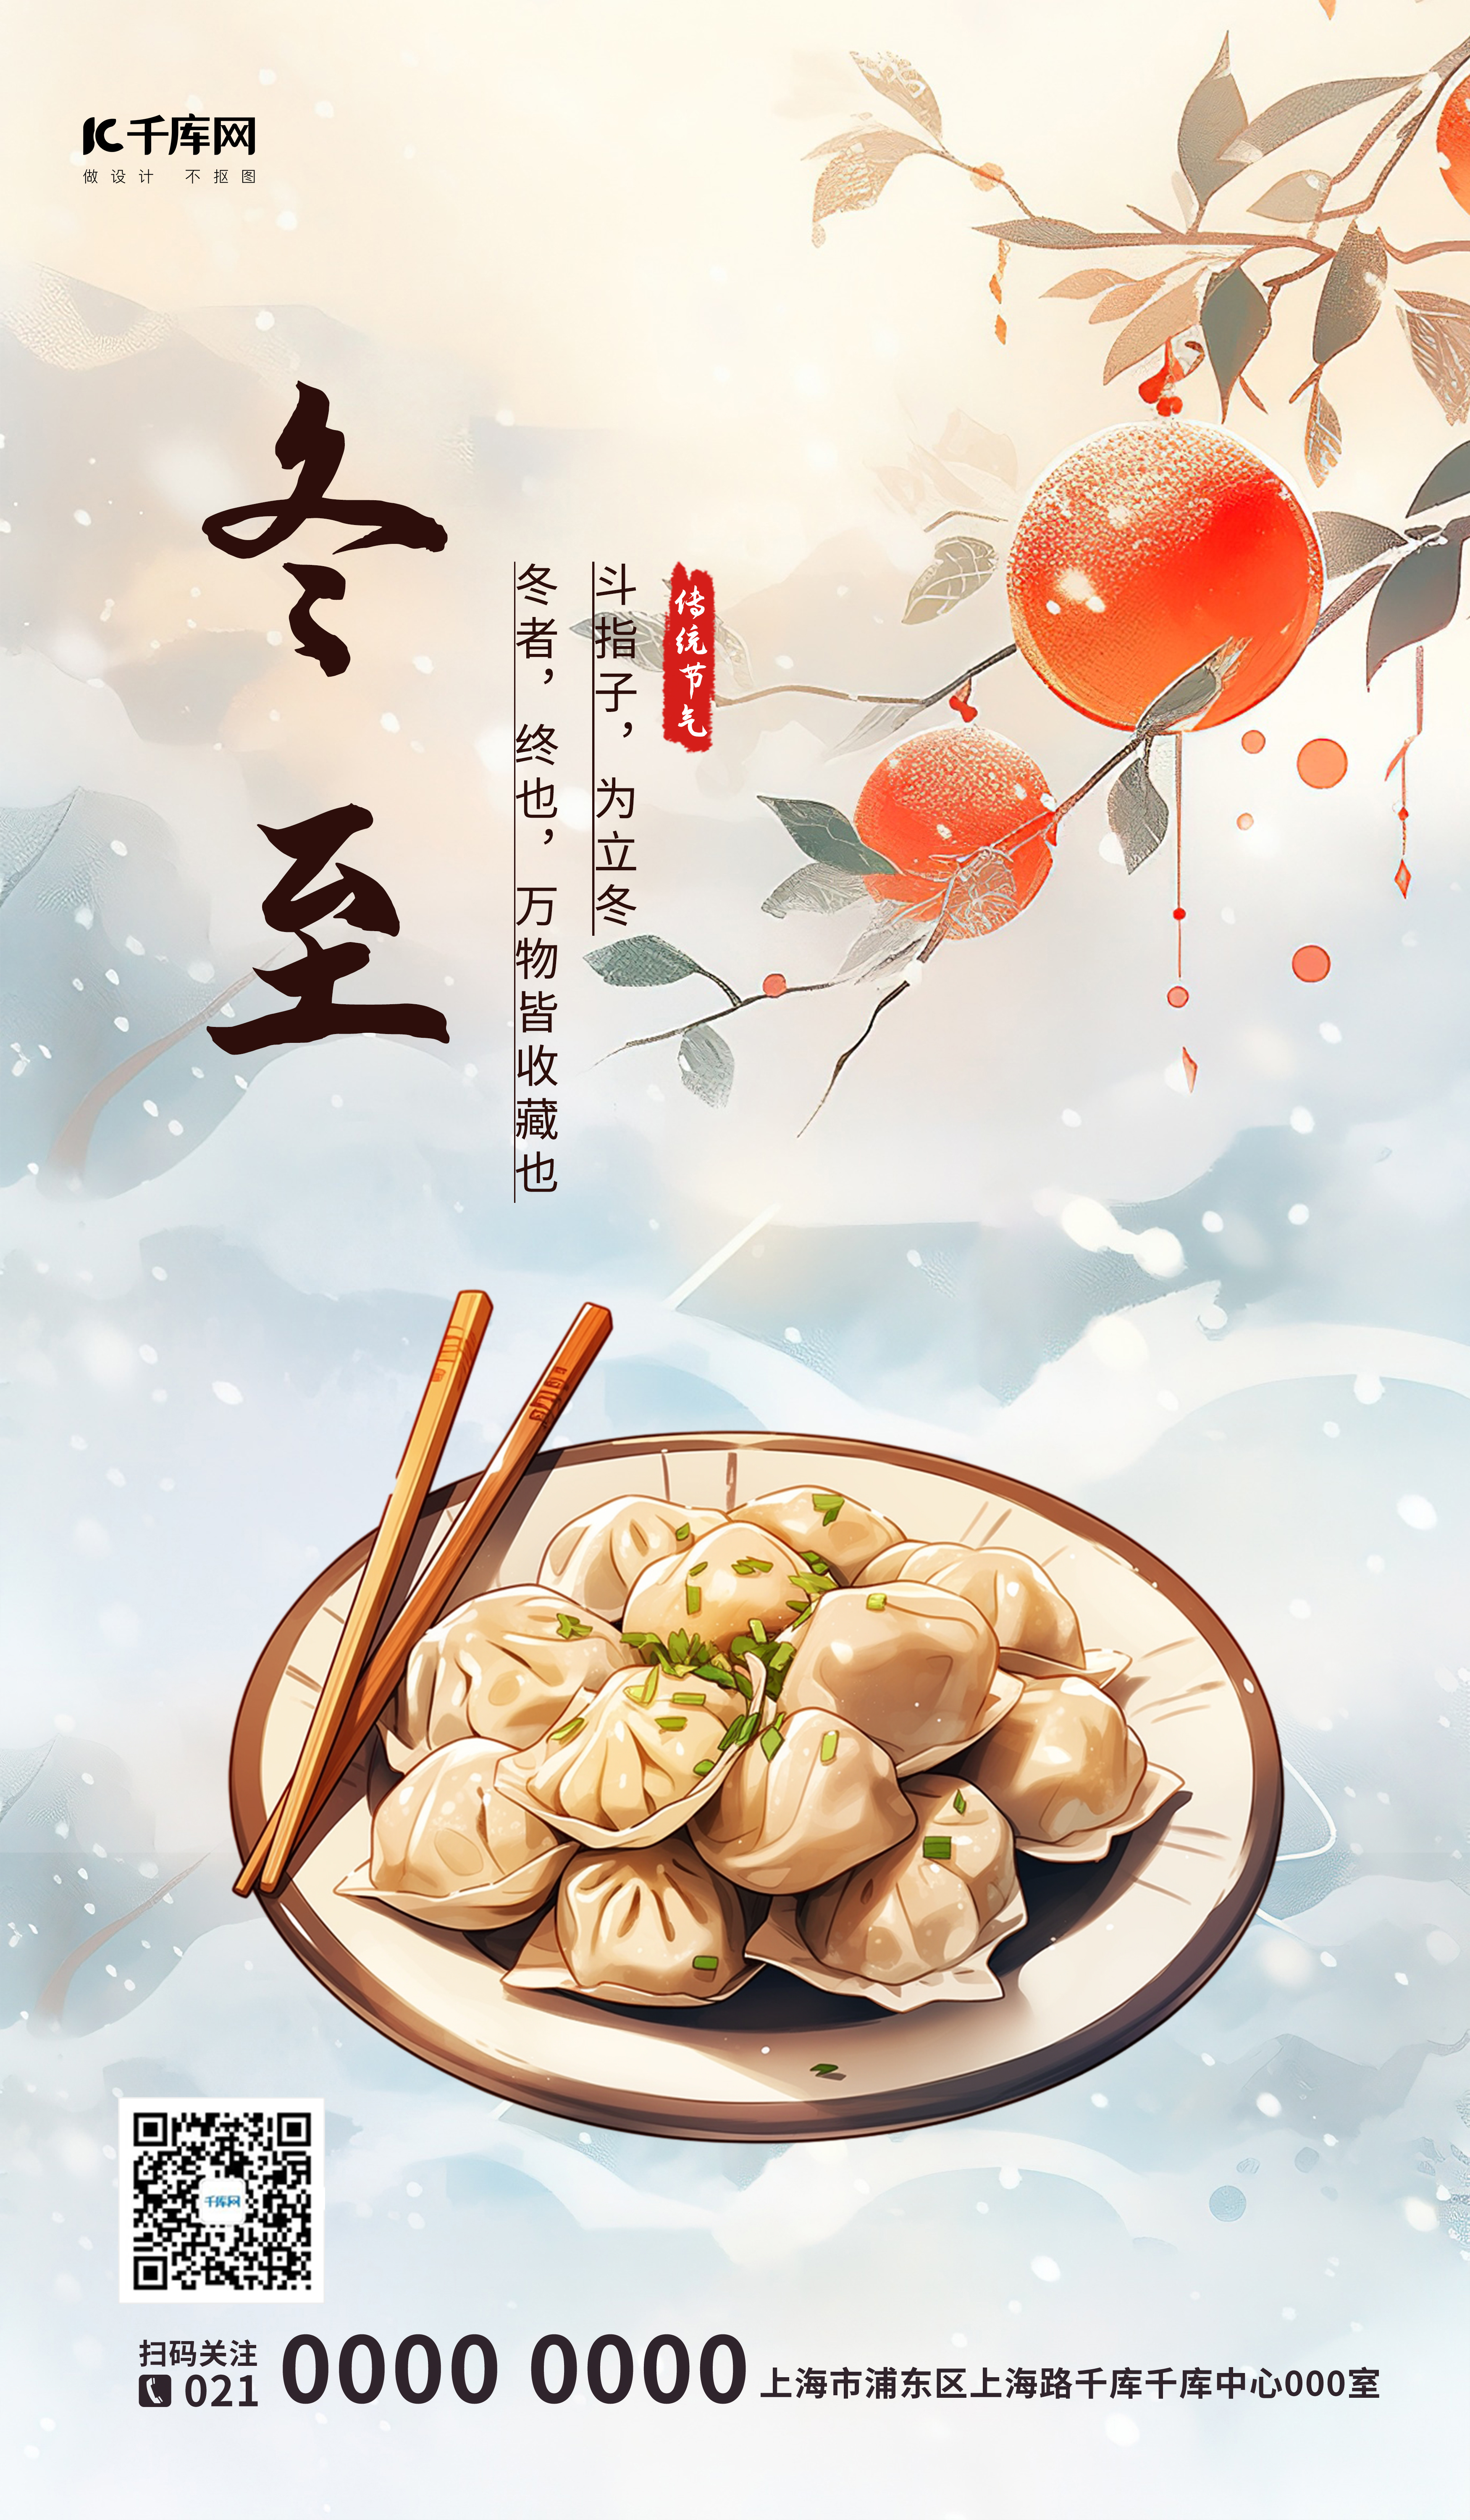 冬至节气水饺插画海报图片